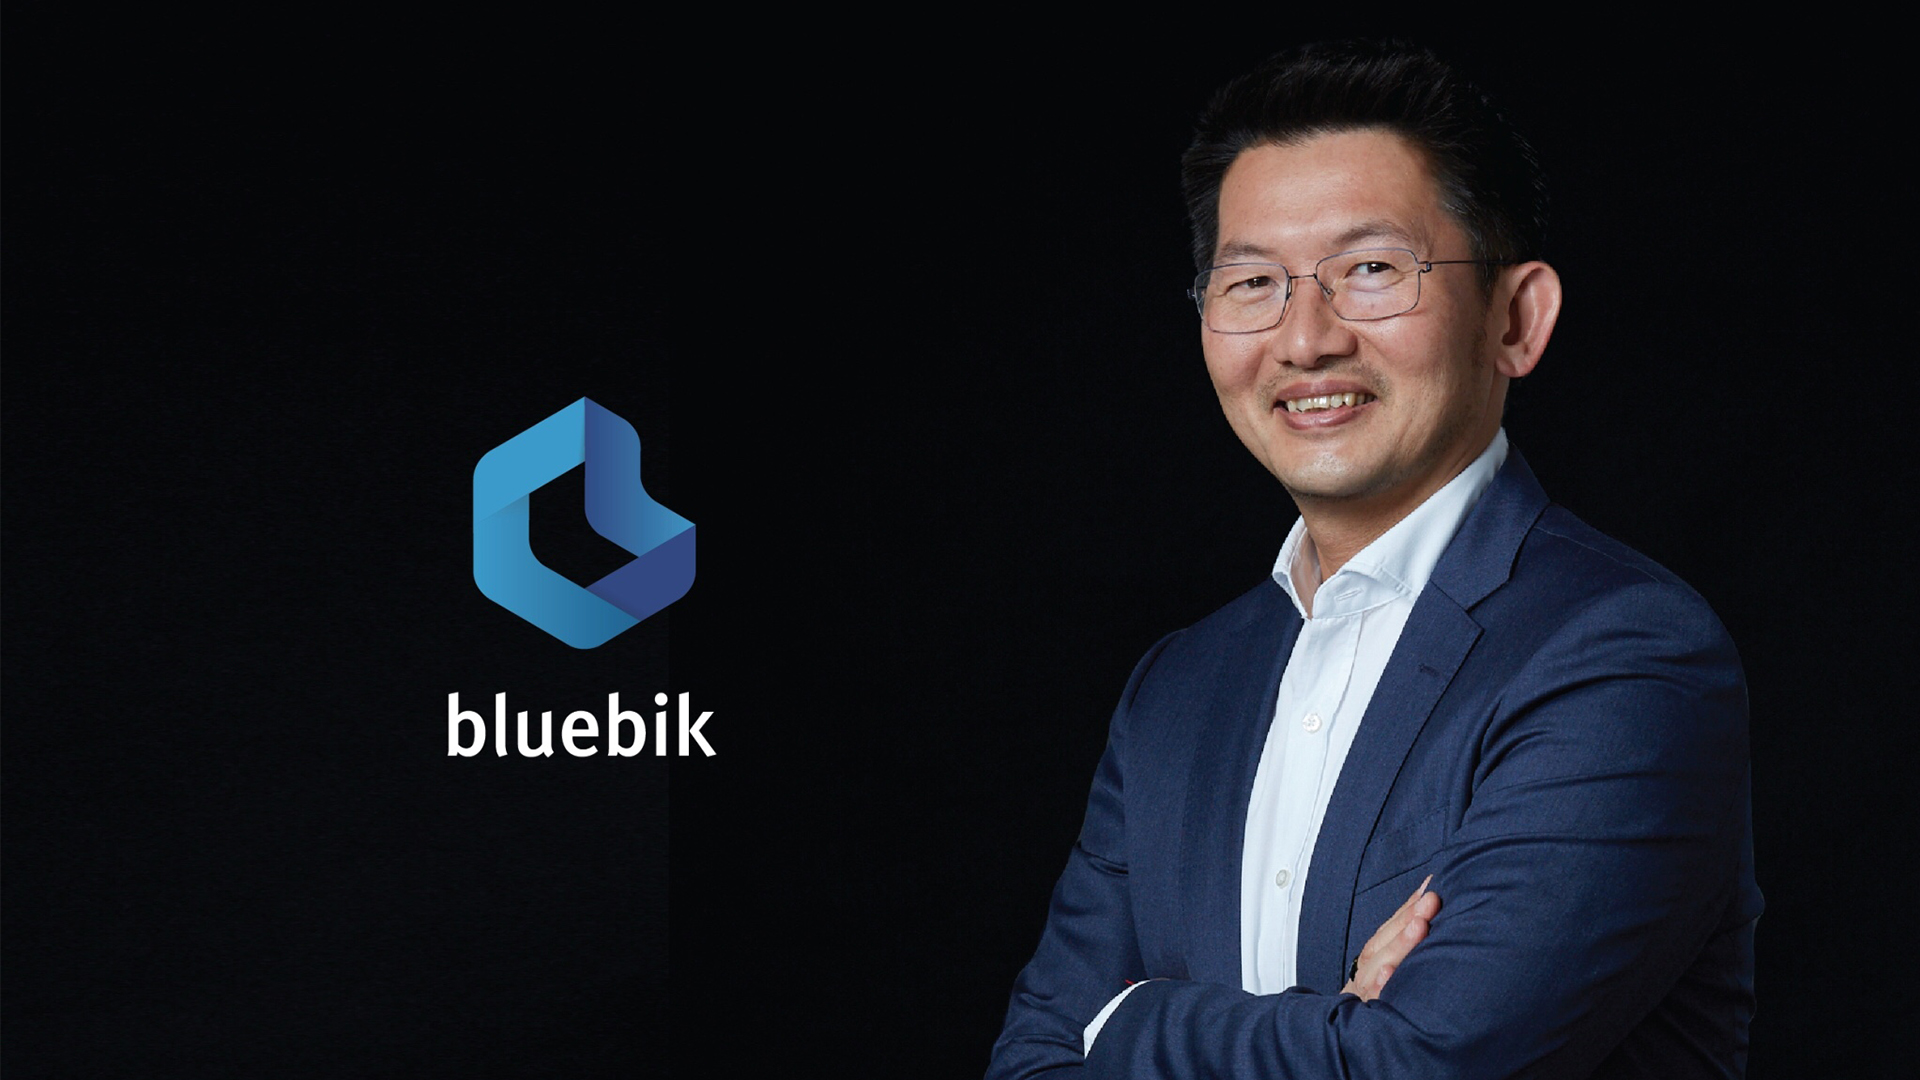 Bluebik Group ประกาศแต่งตั้ง ‘ธนา เธียรอัจฉริยะ’ นั่งแท่นประธานบอร์ด ตั้งเป้าขับเคลื่อนองค์กรสู่คอนซัลต์ระดับแนวหน้าของประเทศไทย